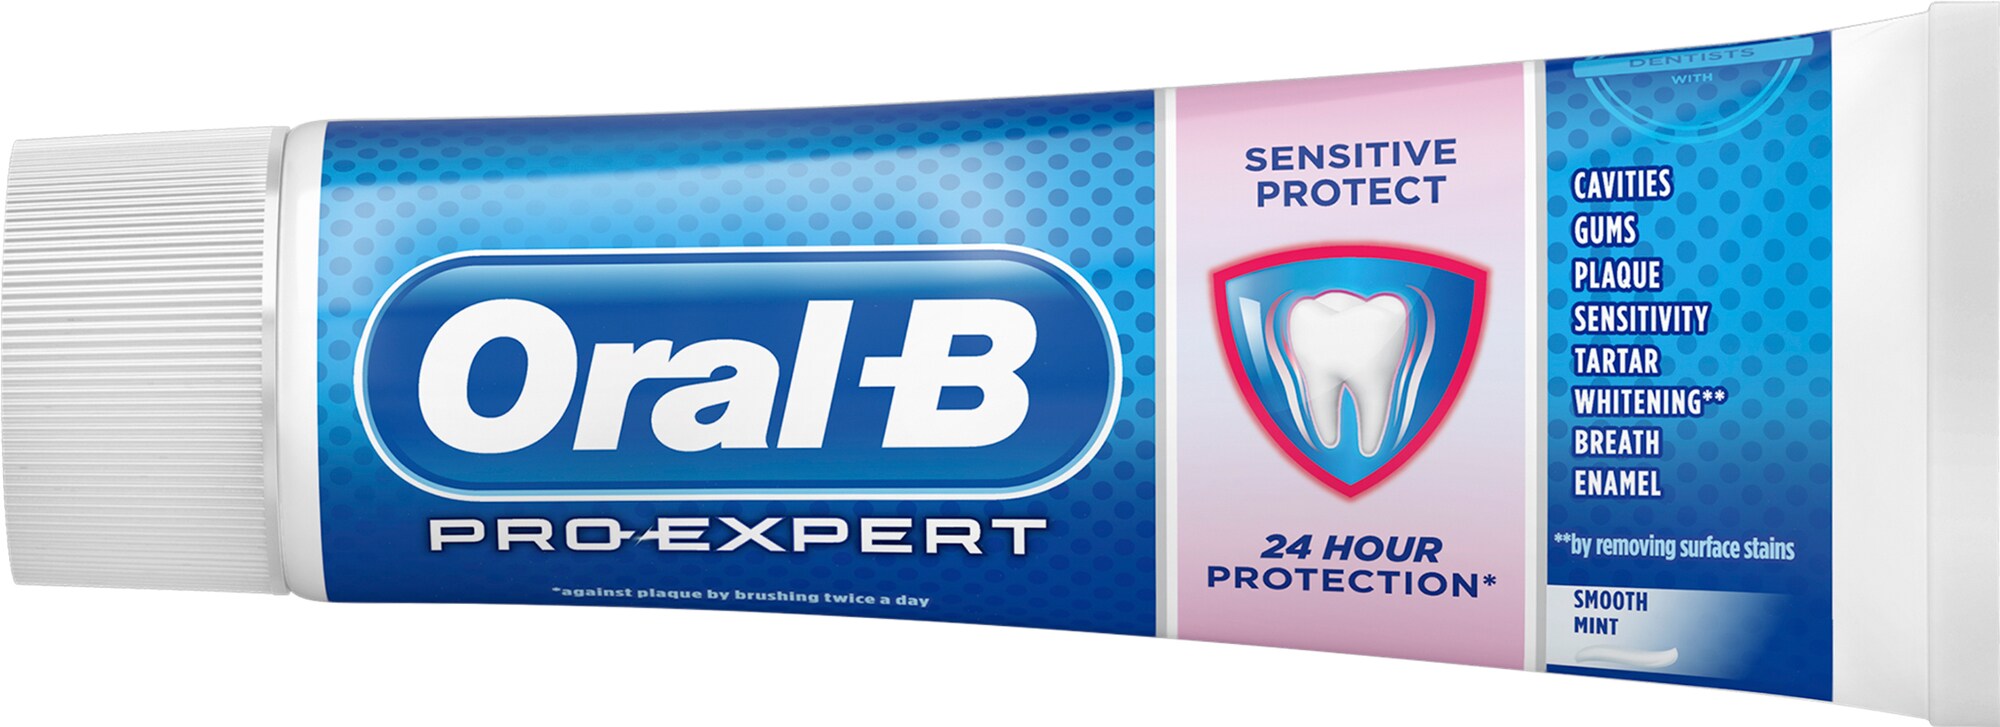 Oral-B Pro-Expert Sensitive Protect tandpasta 951664 med PrisMatch